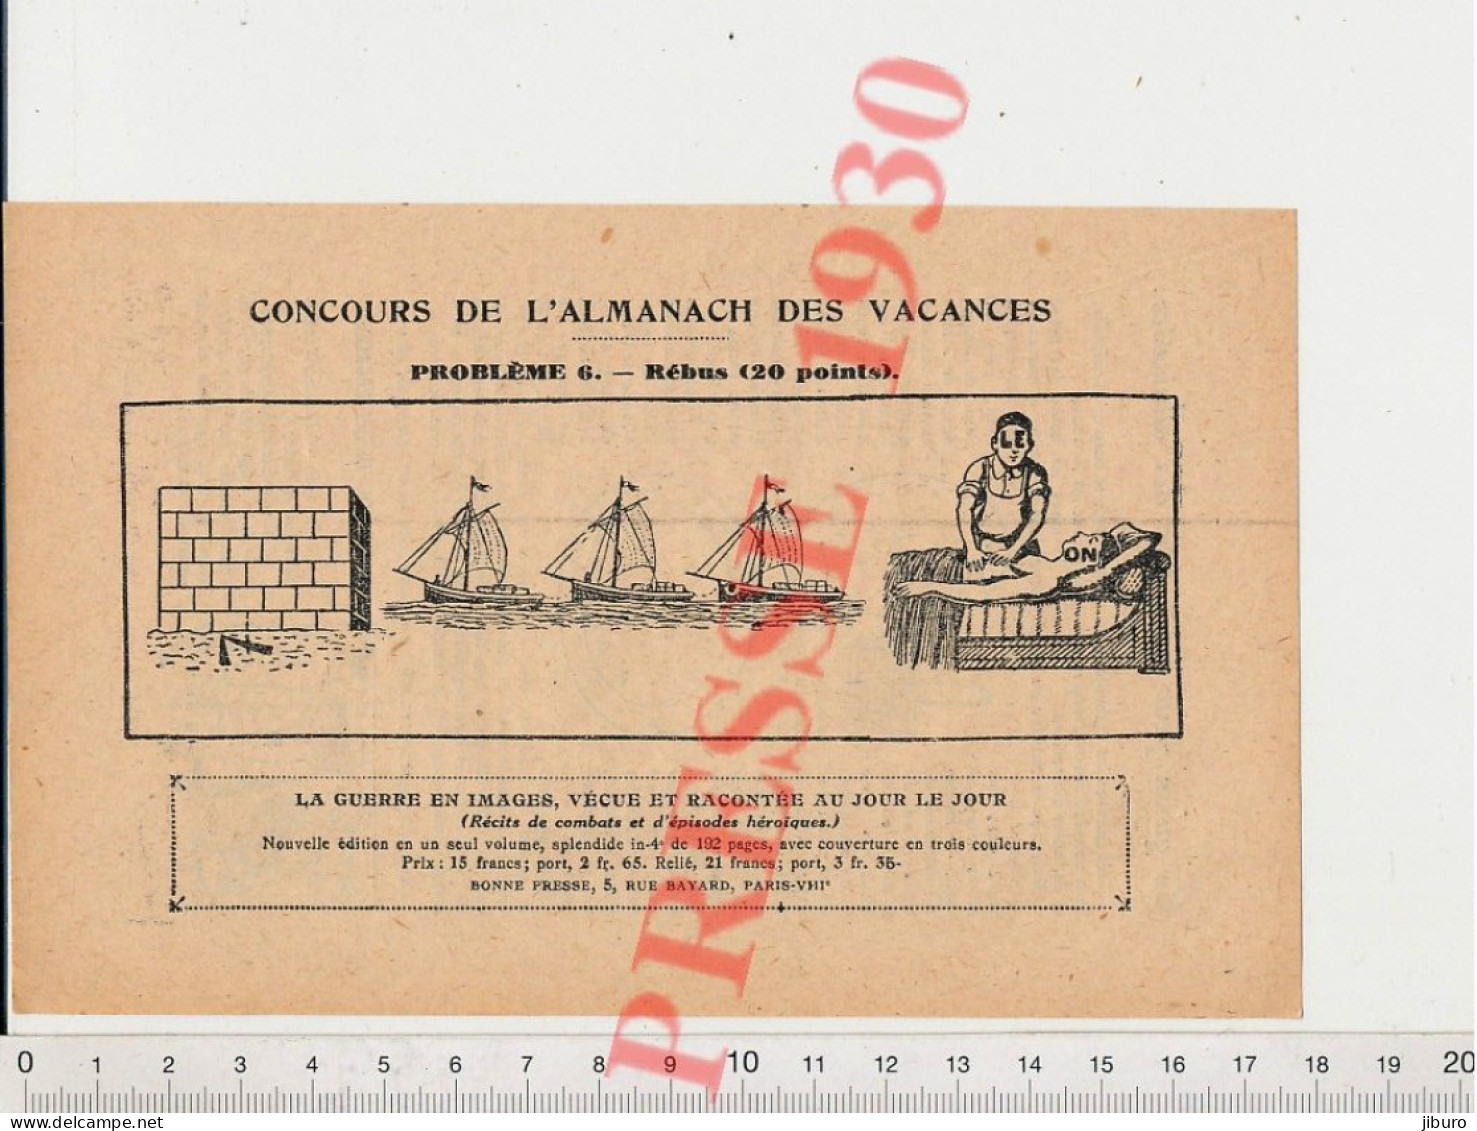 2 Vues 1930 Panier Fabriqué Avec Des Allumettes Corbeille Fabrication + Humour Illettrisme Armée + Rébus Sans Réponse - Non Classés